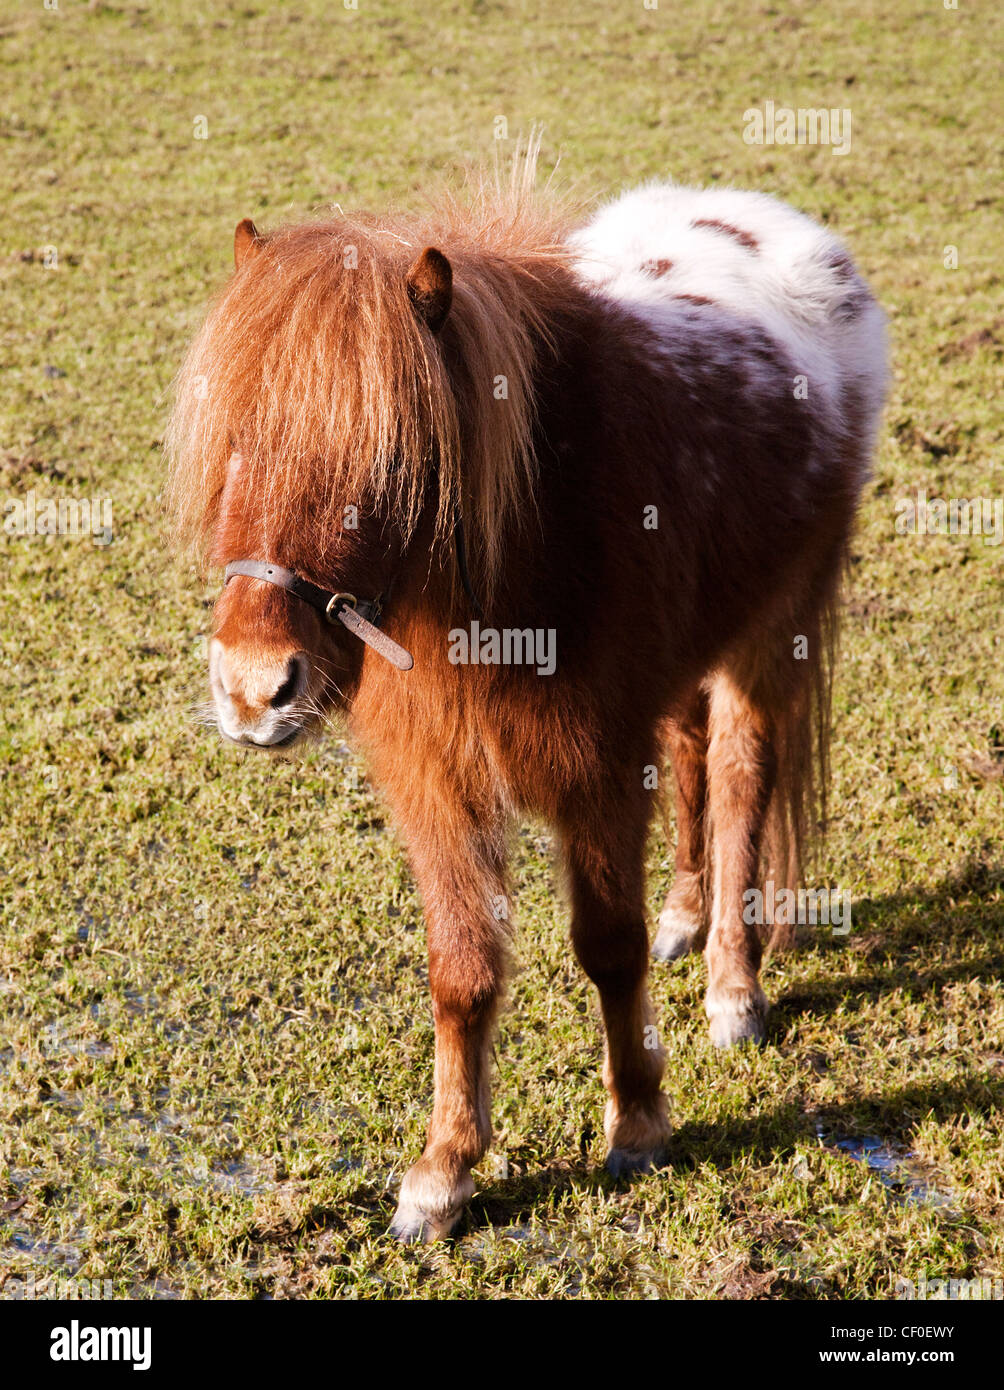 A diminutive Falabella miniature horse Stock Photo